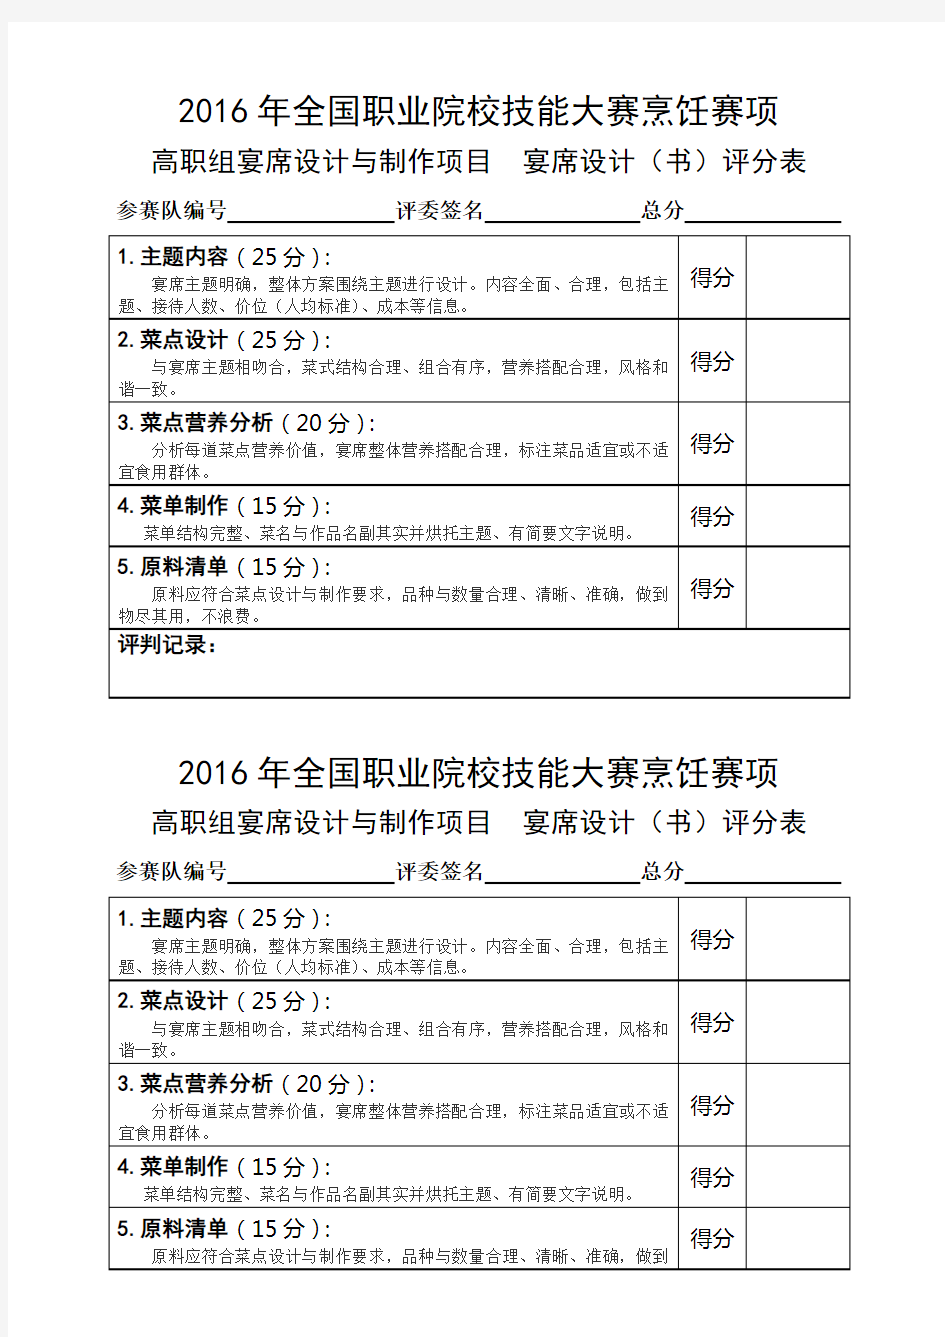 2016高职 烹饪评分表(正式赛卷)